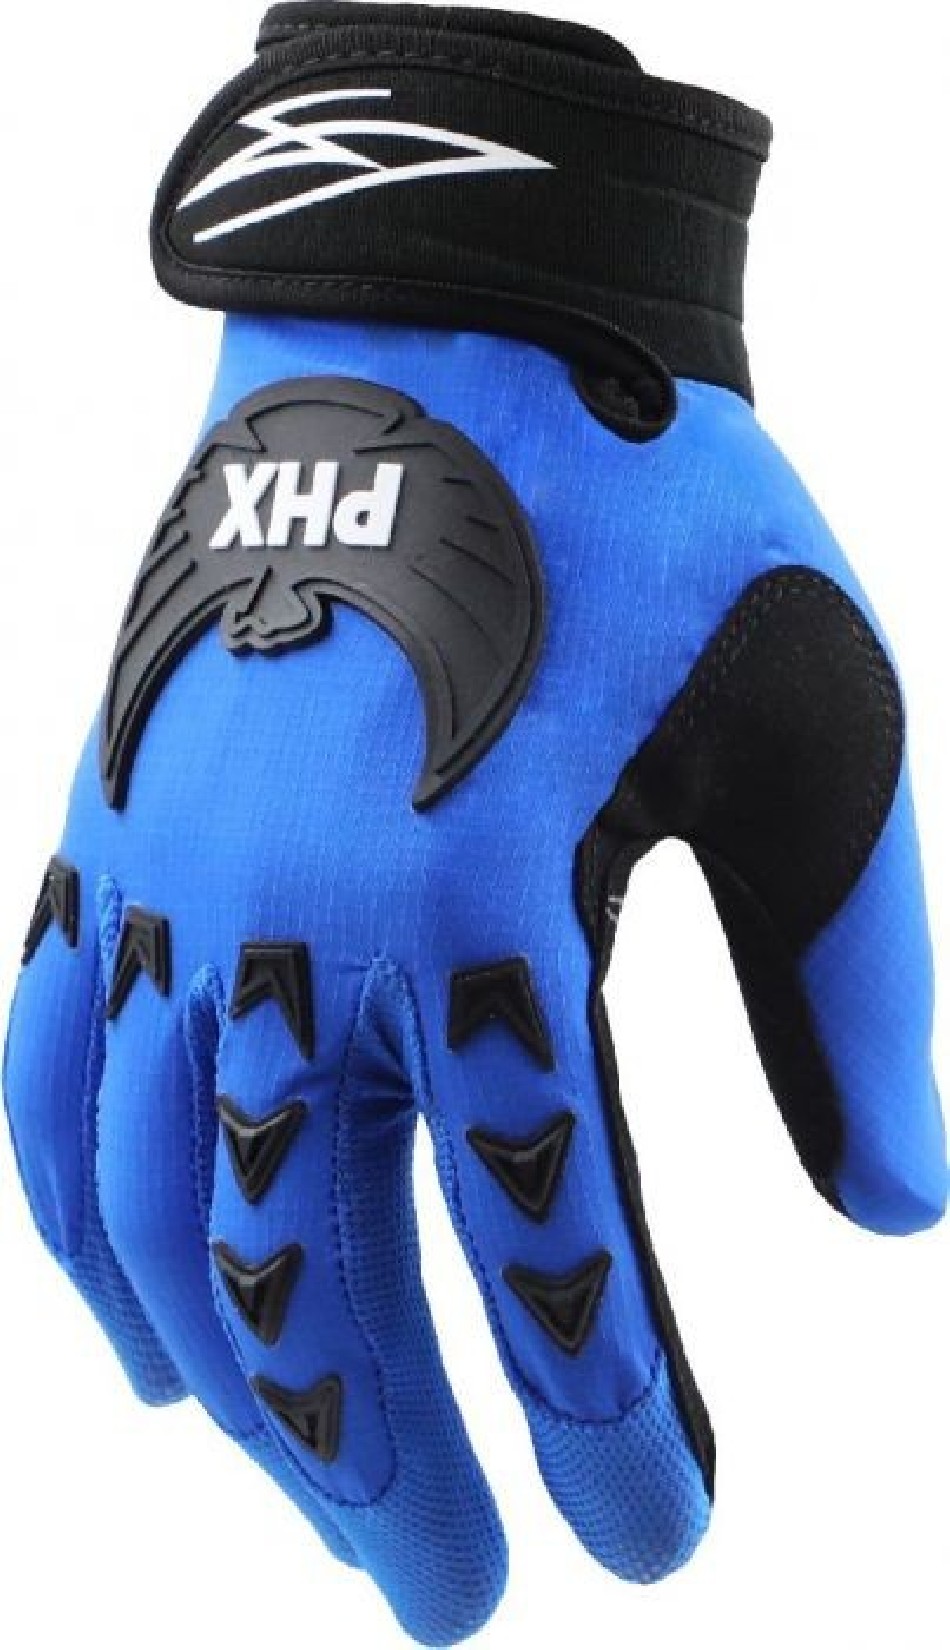 Gloves PHX for atv and motocross - VTT LACHUTE